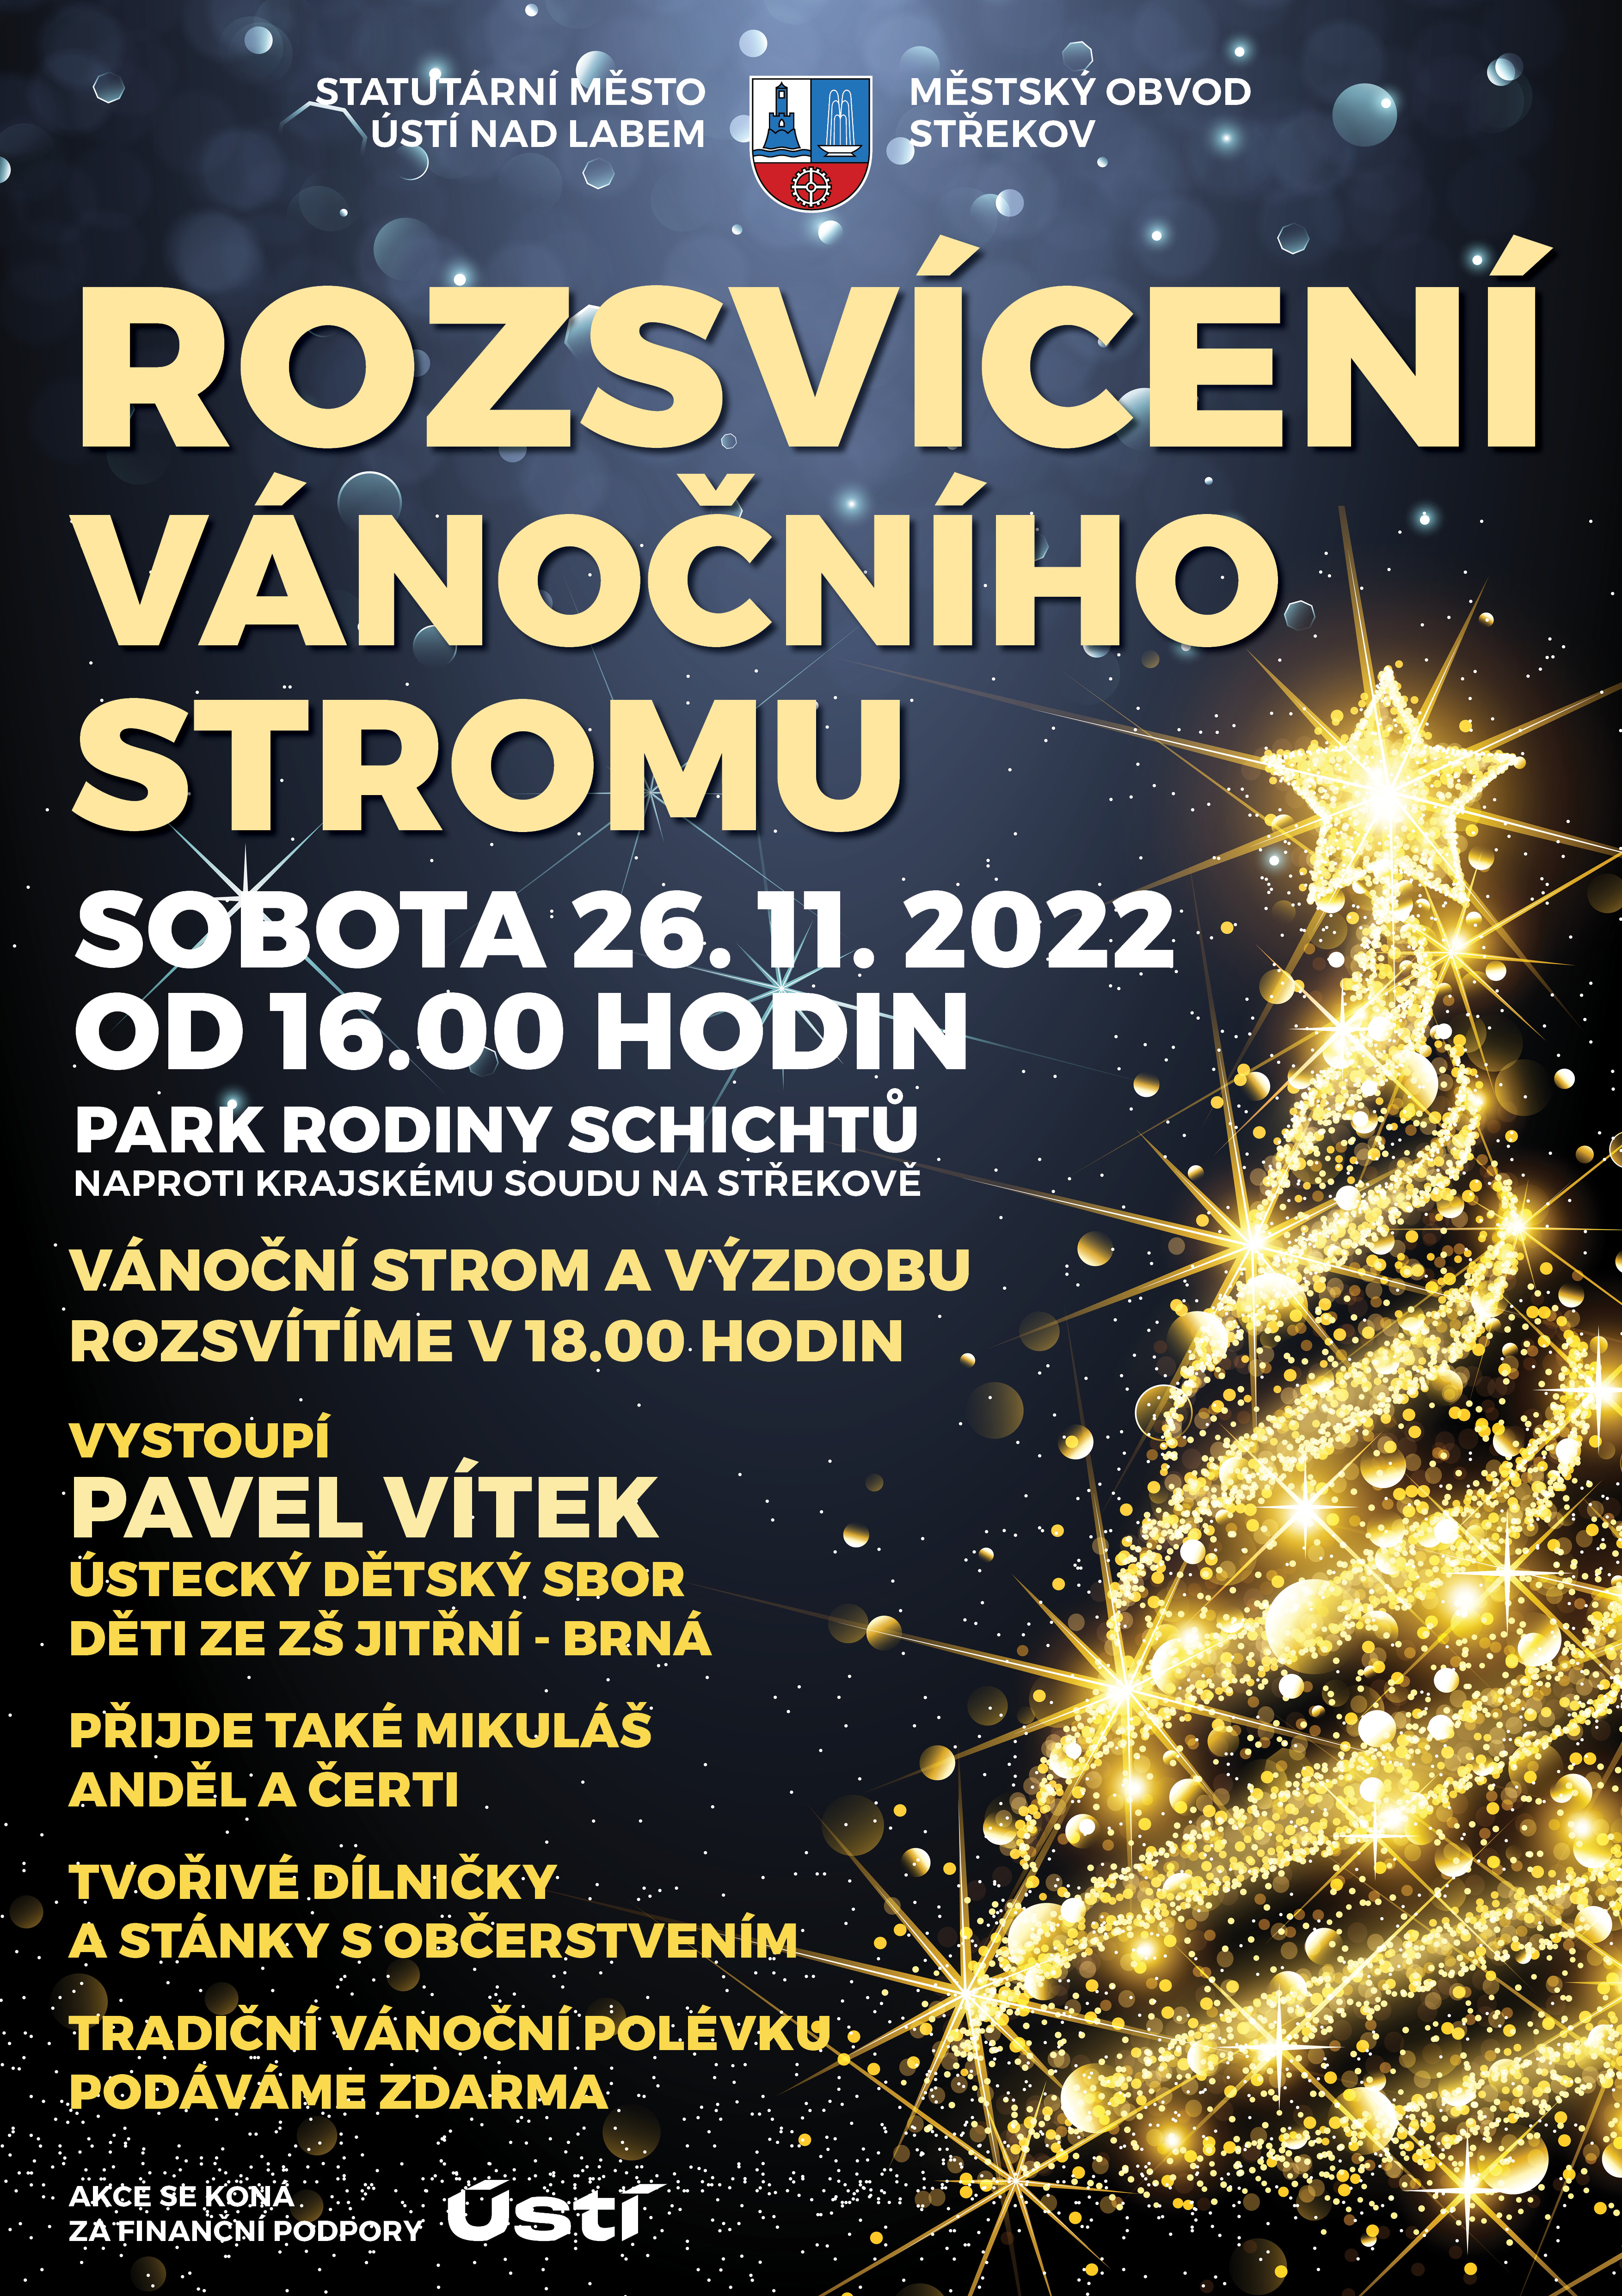 Rozsvícení vánočního stromu 2022 - plakát